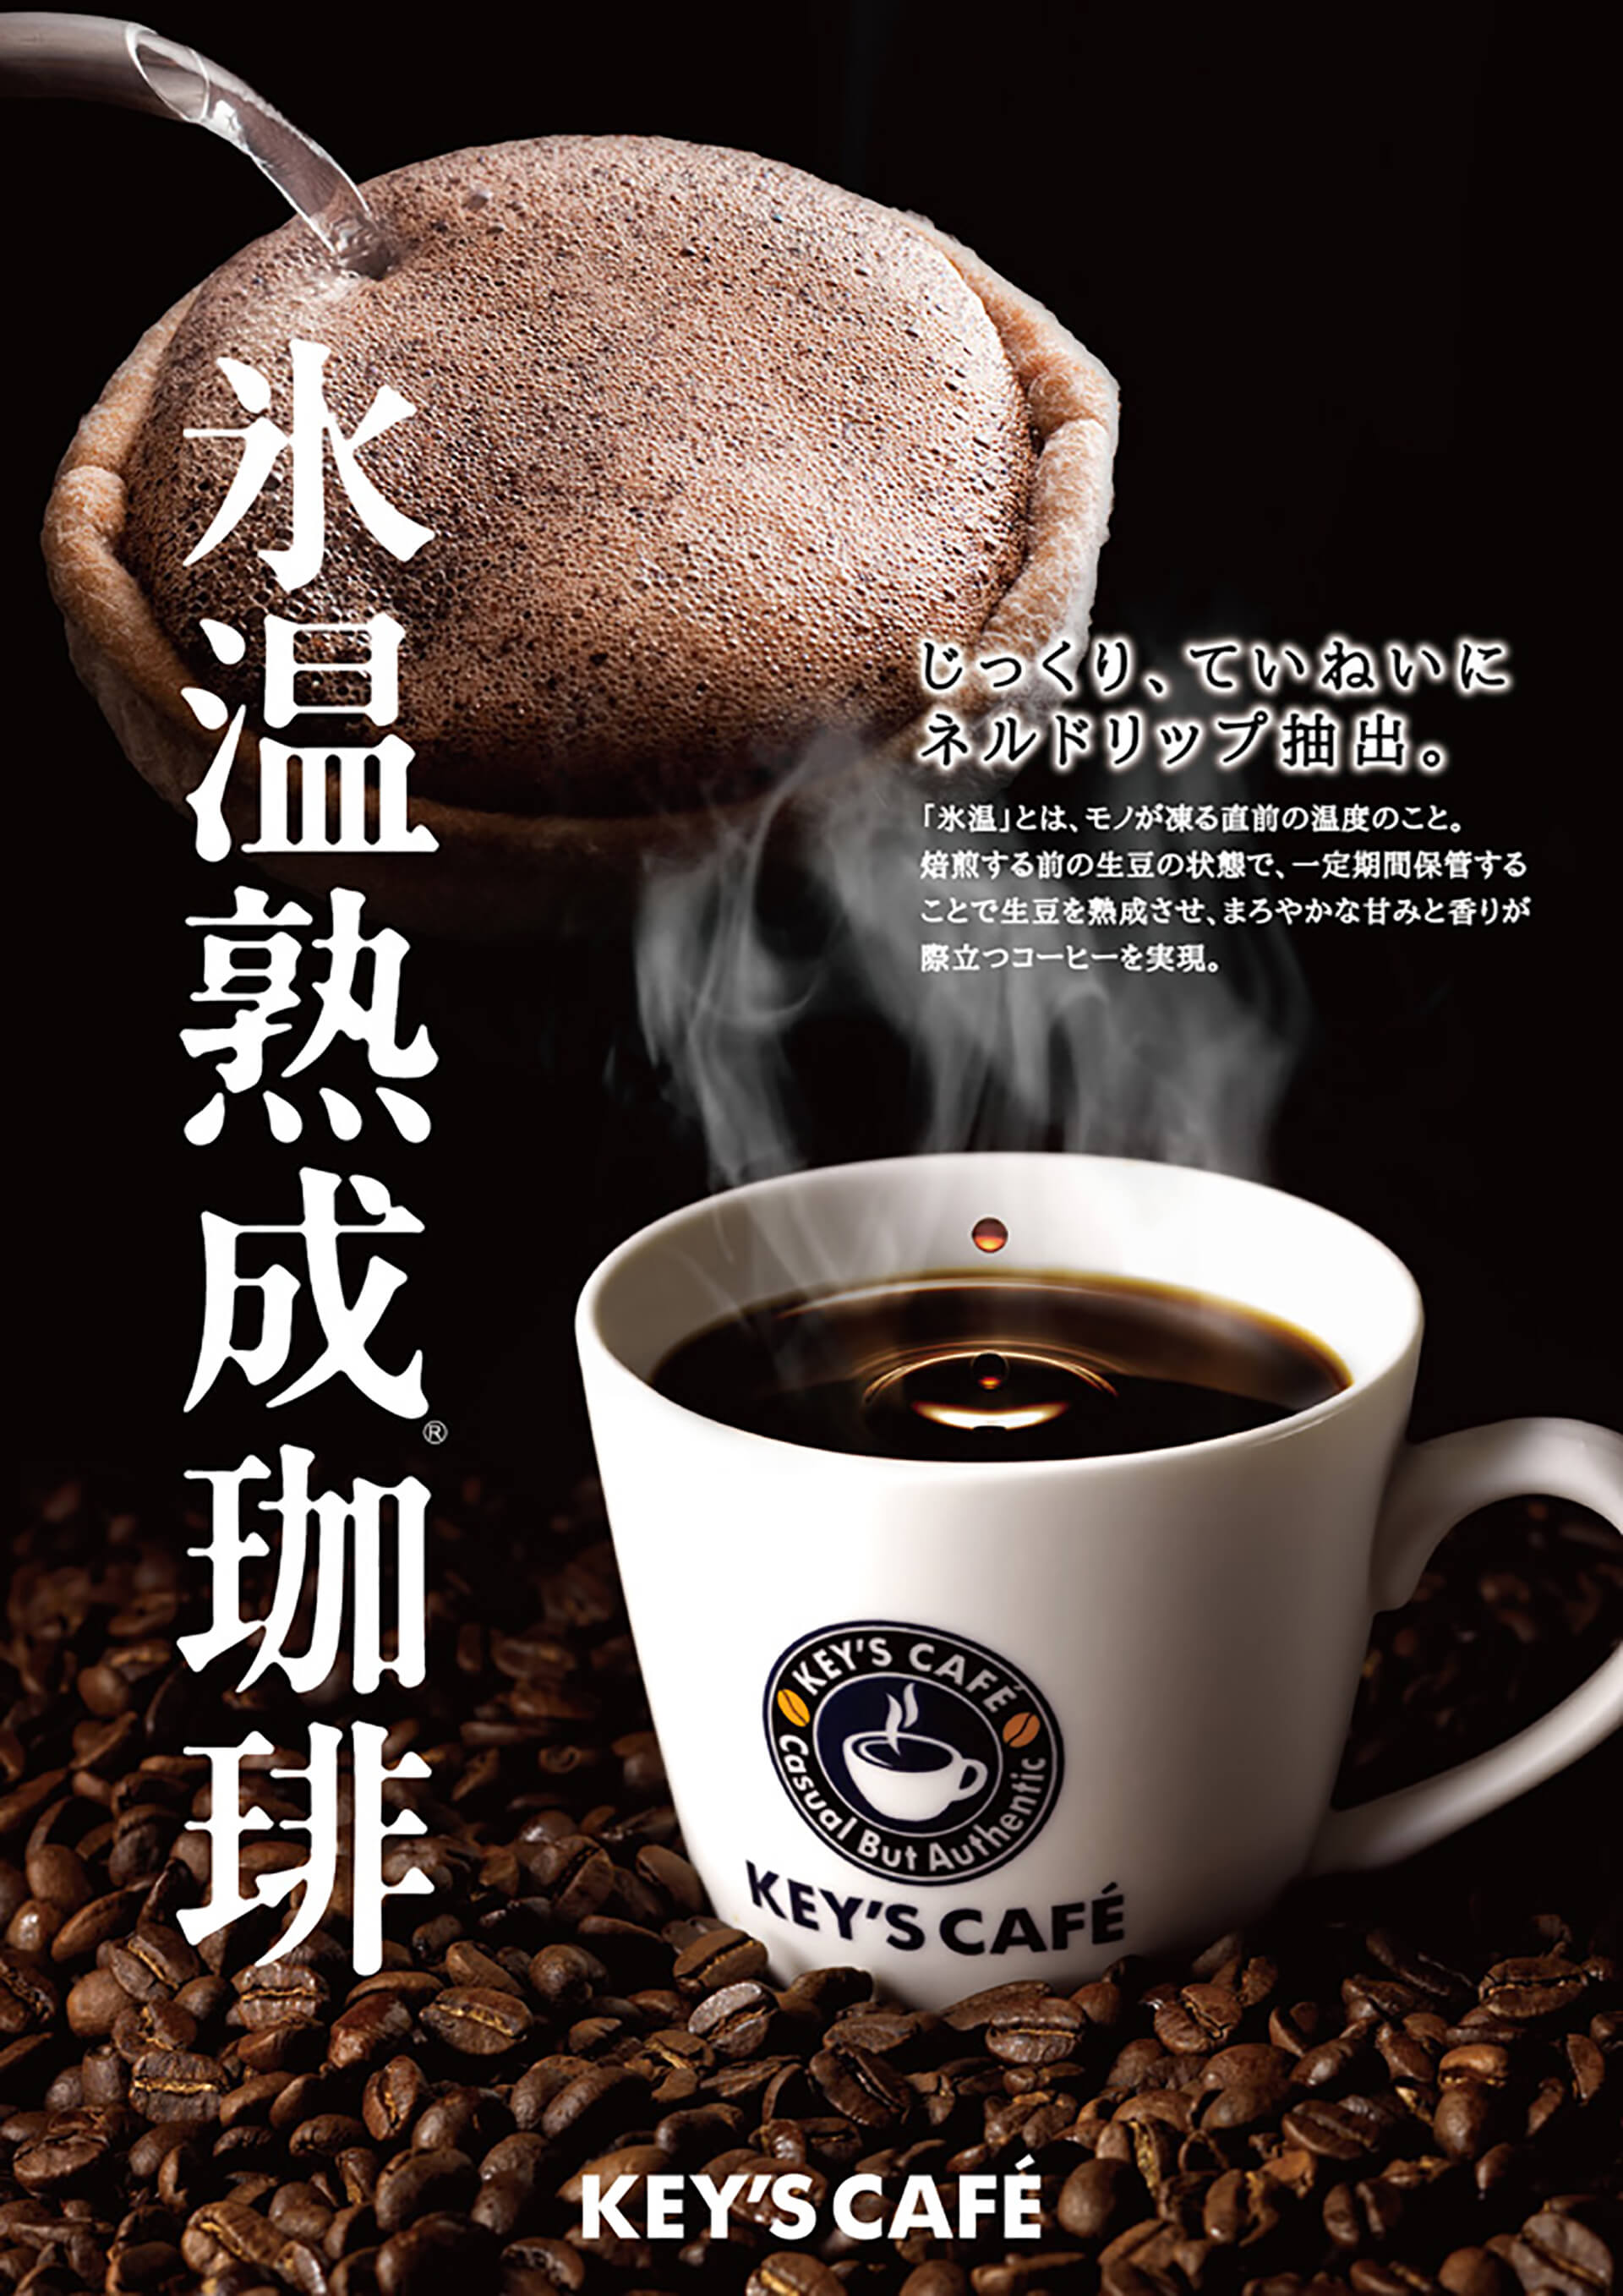 Nihonbashi K EY’S CAFÉ